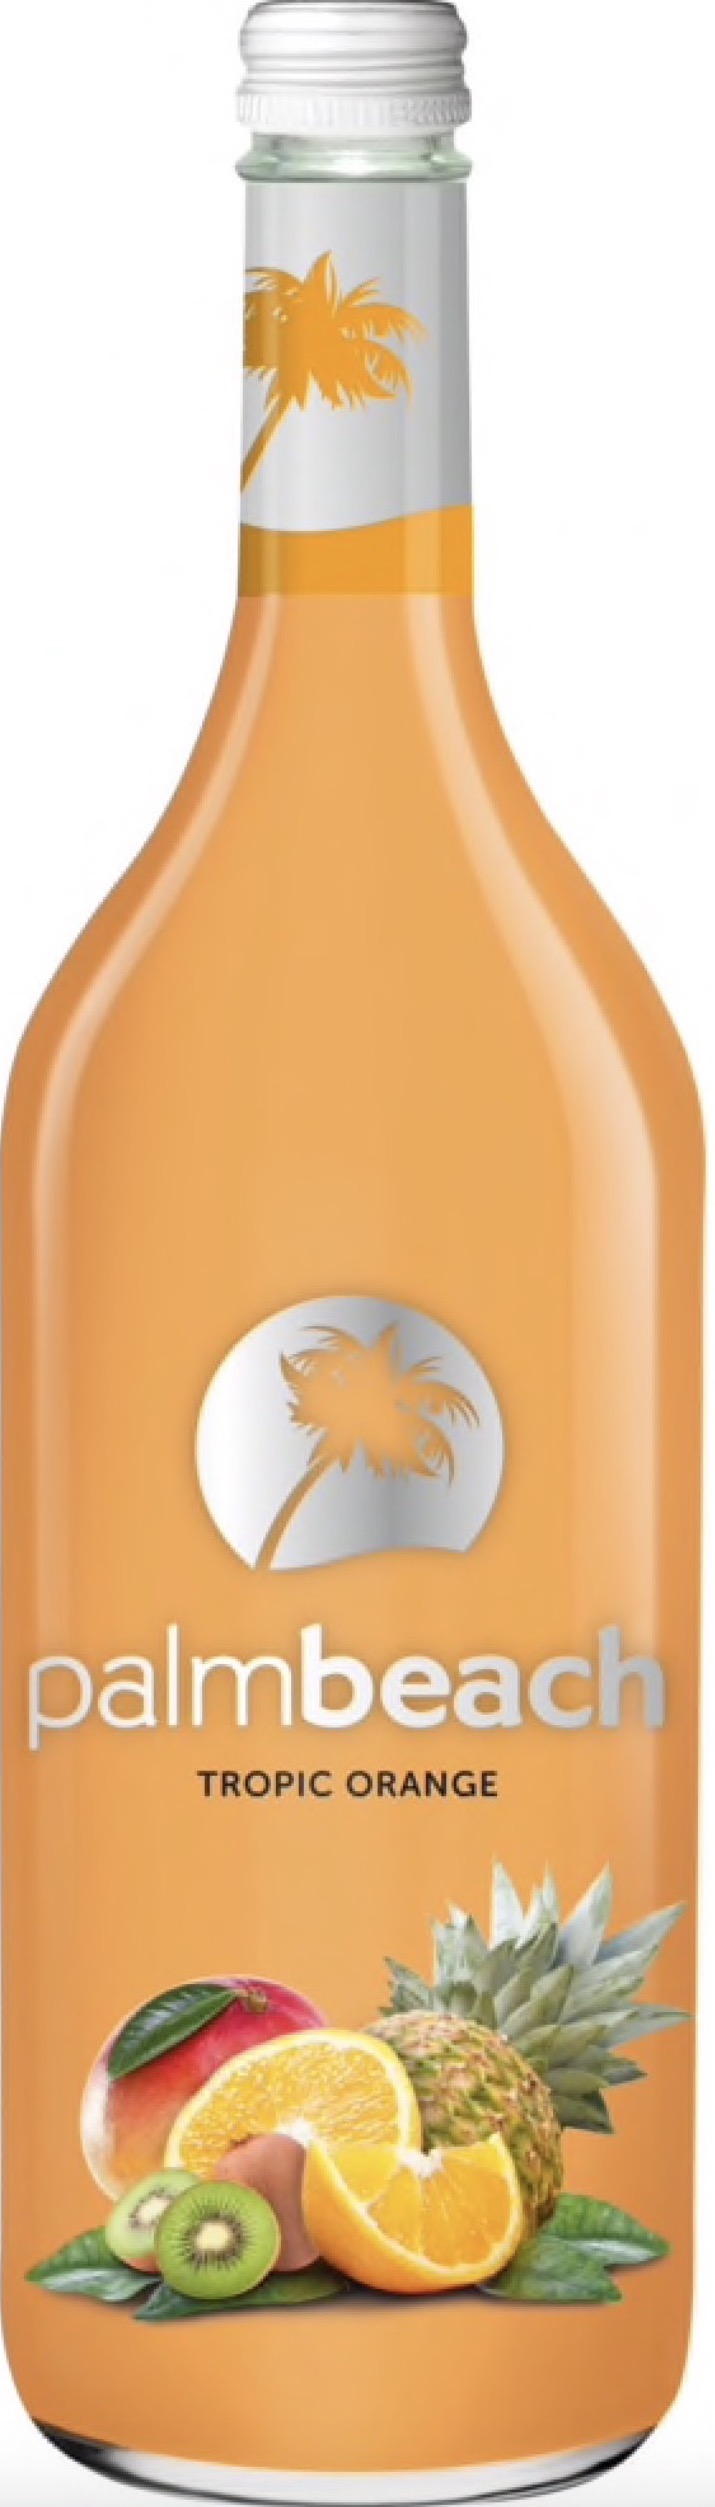 Palm Beach Tropic - Orange 6% vol. 1,0L